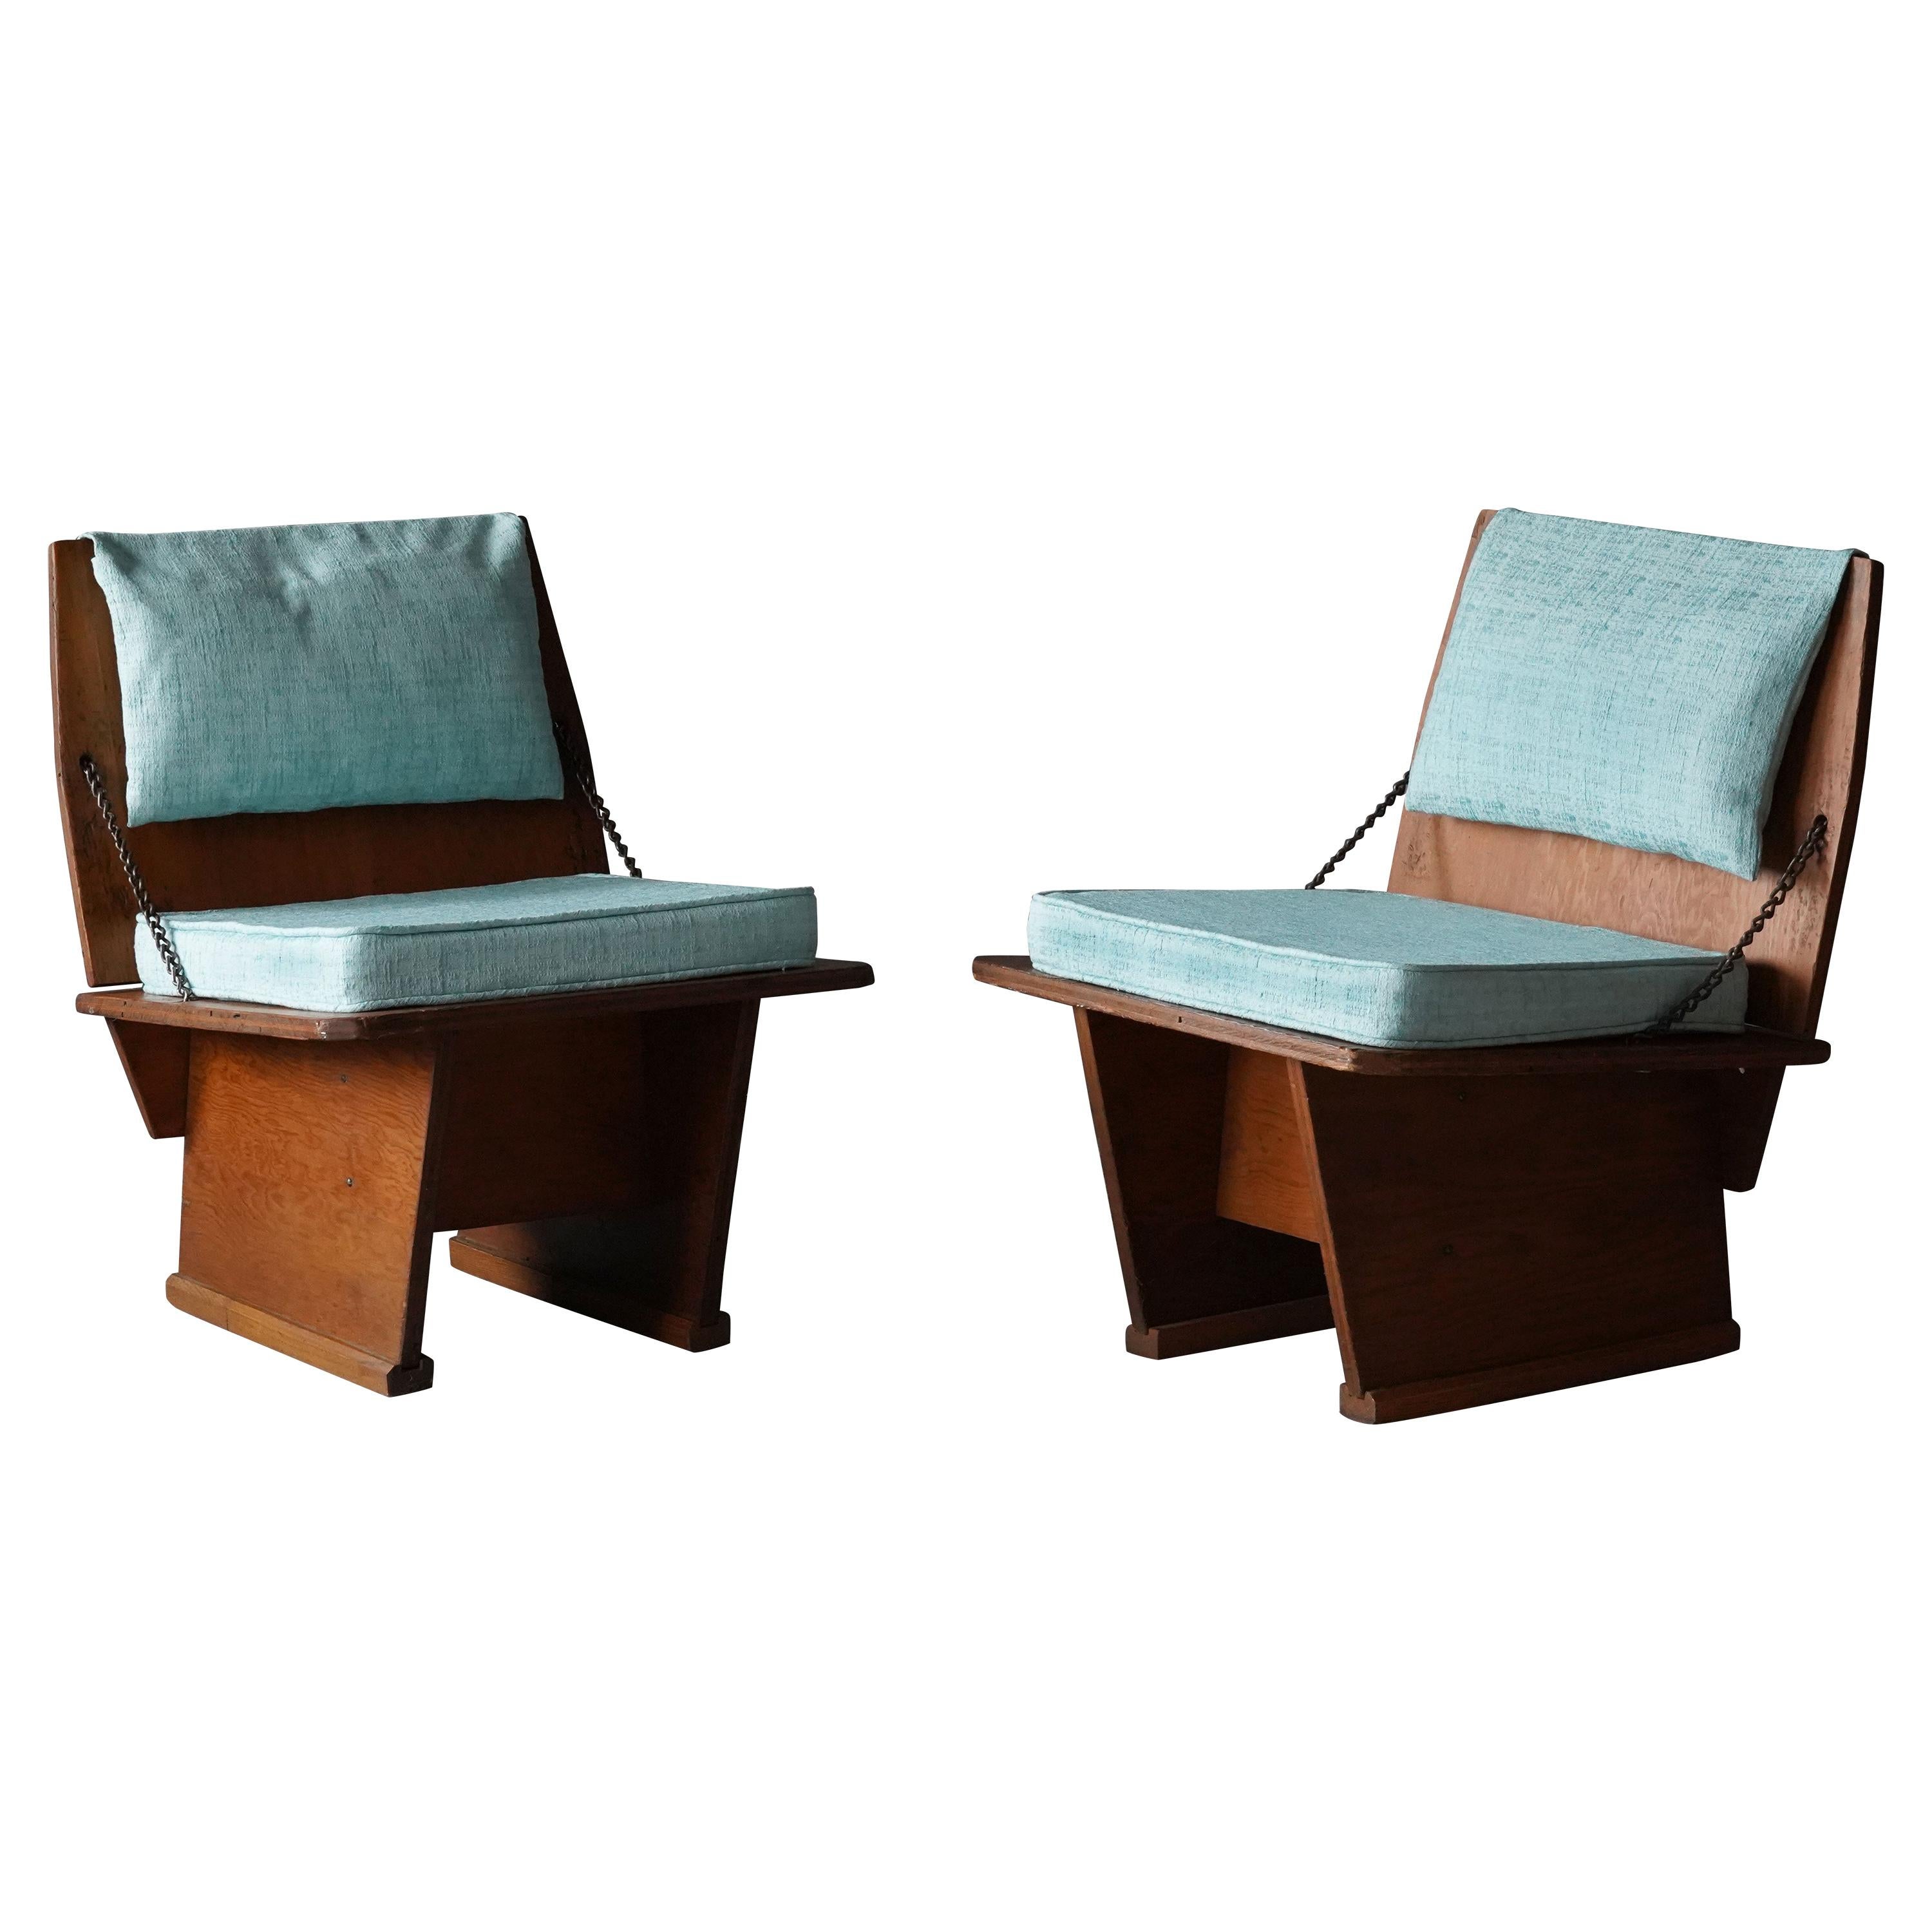 Frank Lloyd Wright Lounge chairs, Unitarian Church, Plywood, Steel, Fabric, 1951